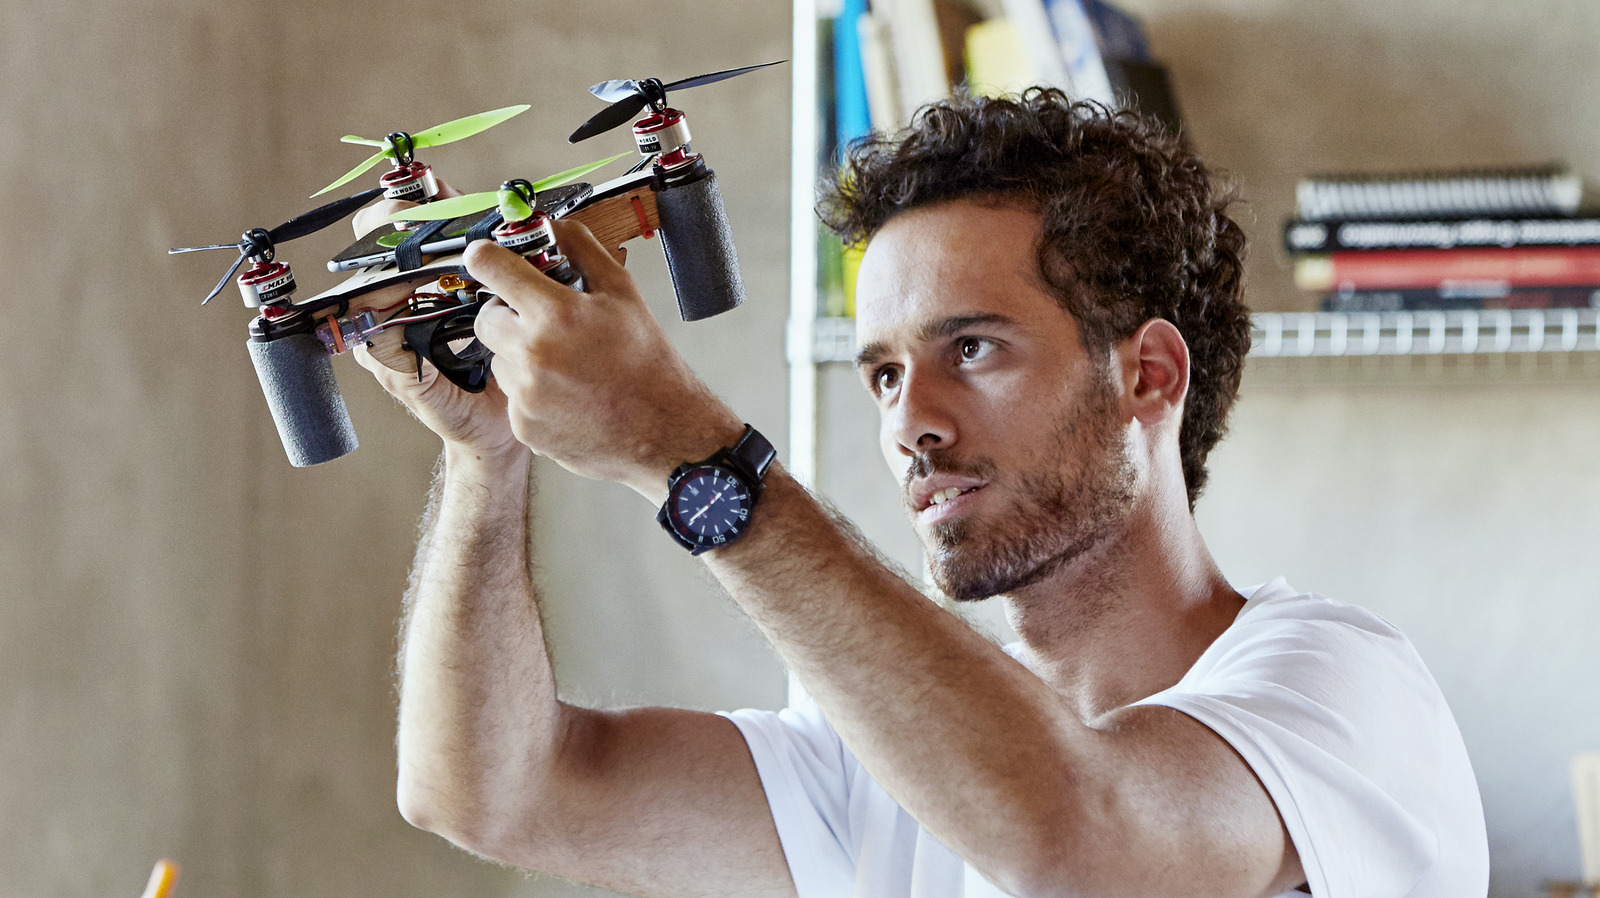 ¿Puedes construir un dron a partir de una Raspberry Pi?